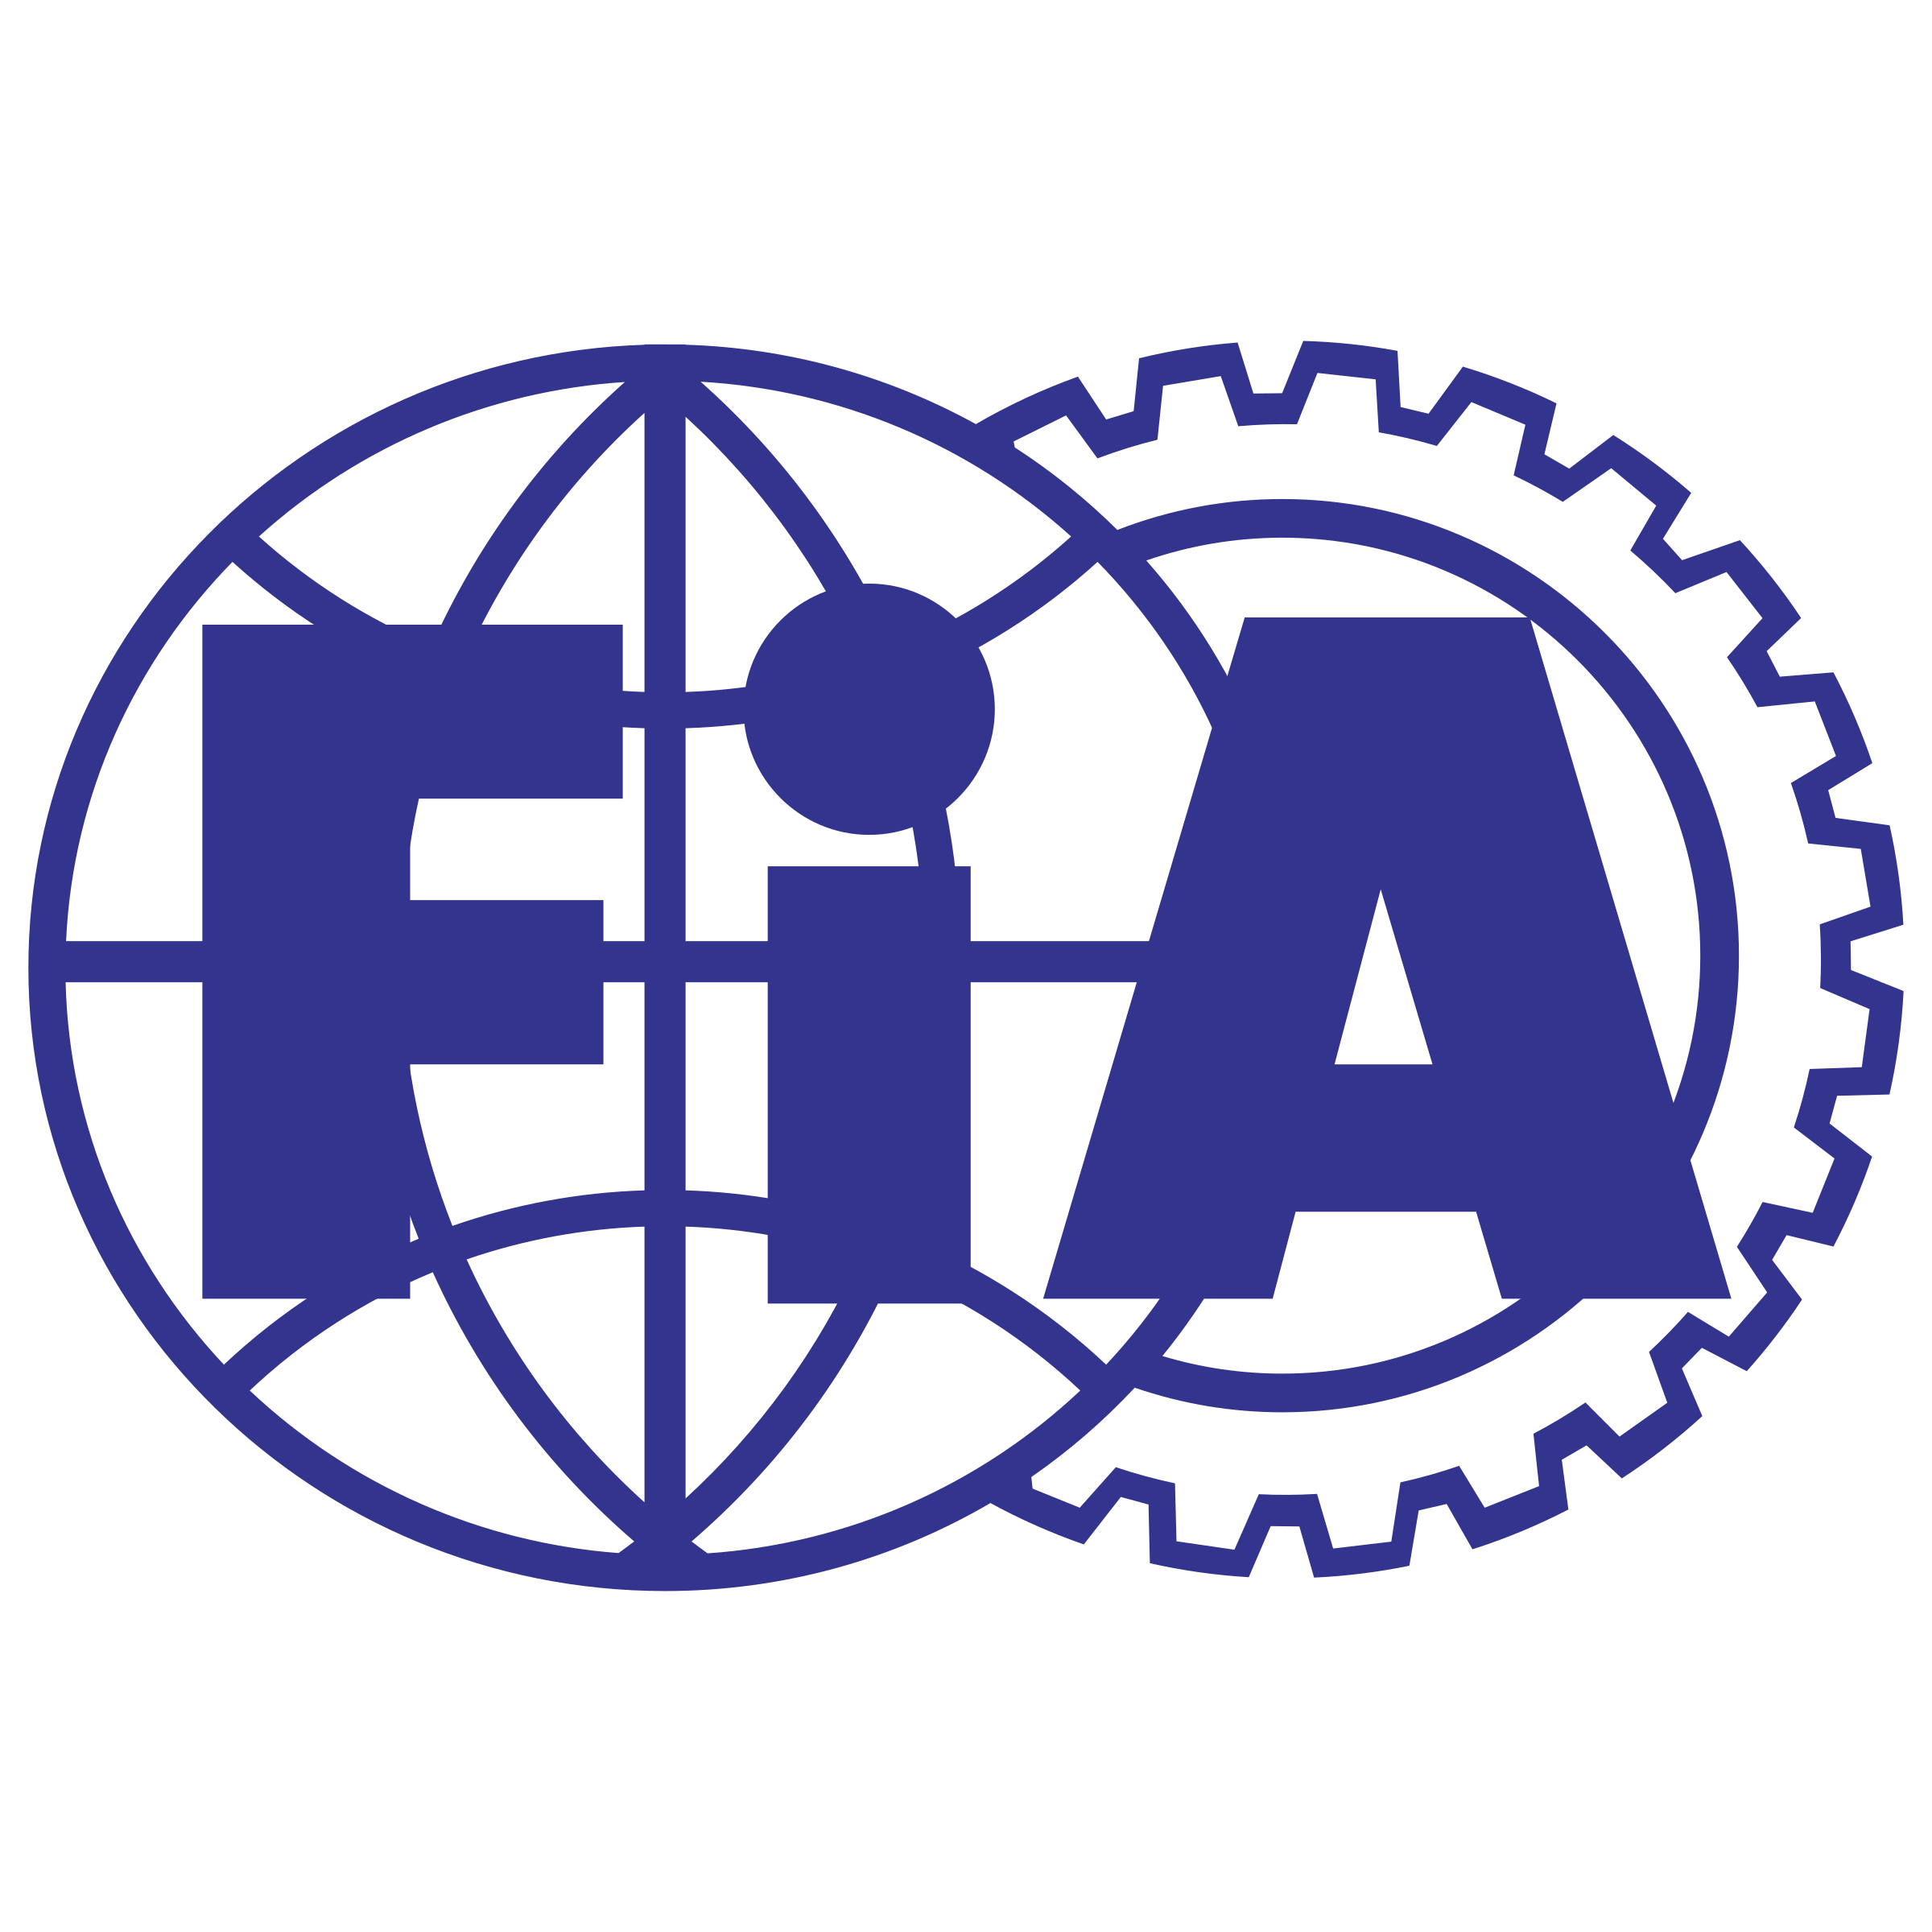 fia-logo-png-transparent